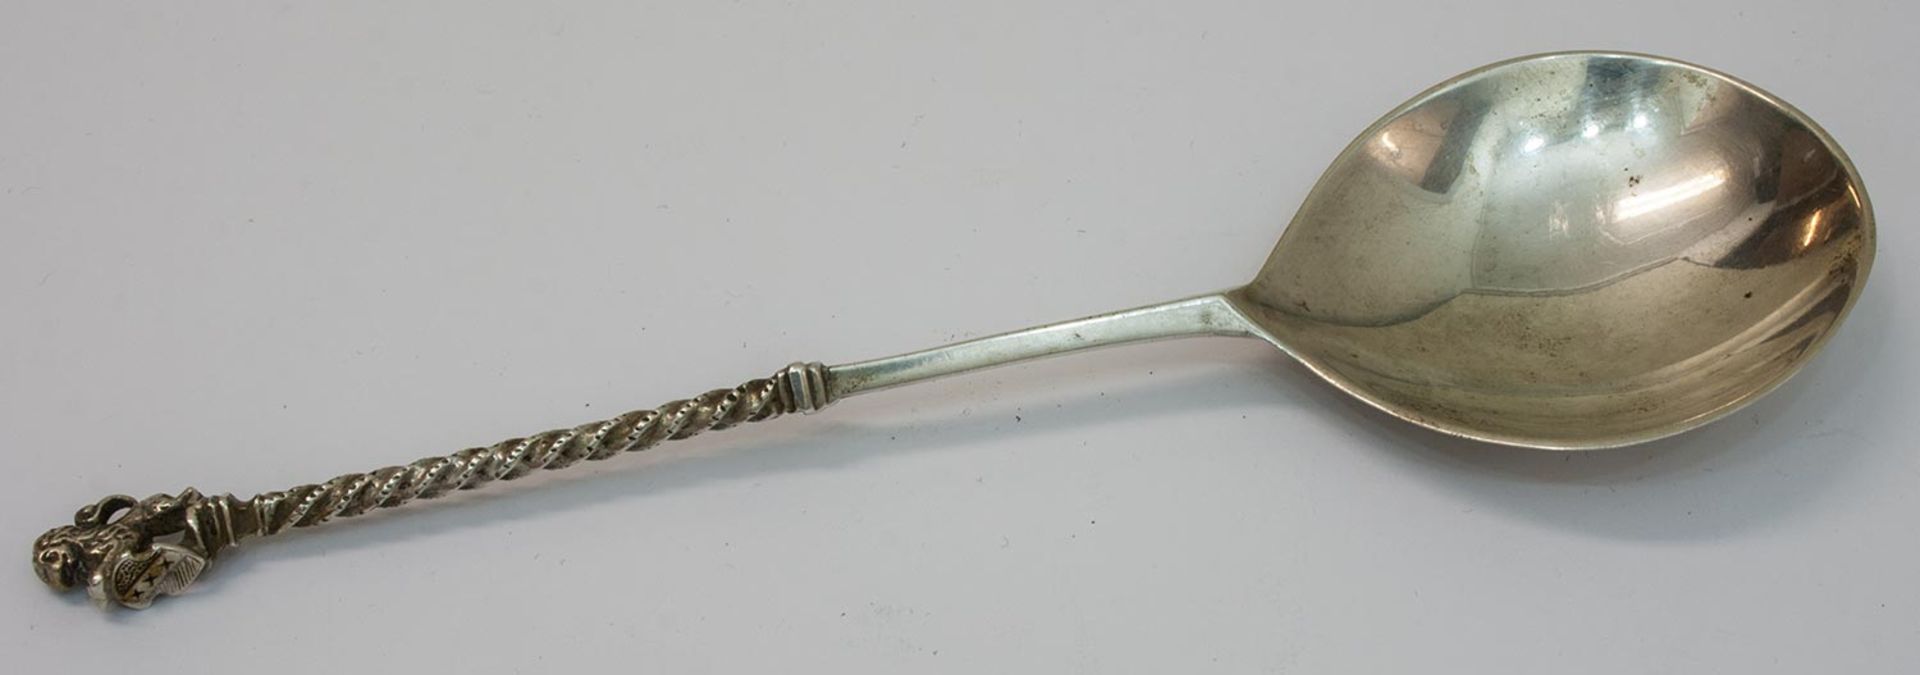 SahnelöffelHolland, Jahresbuchstabe "b" (19. Jh.), 833er Silber, gedrehter Schaft mit